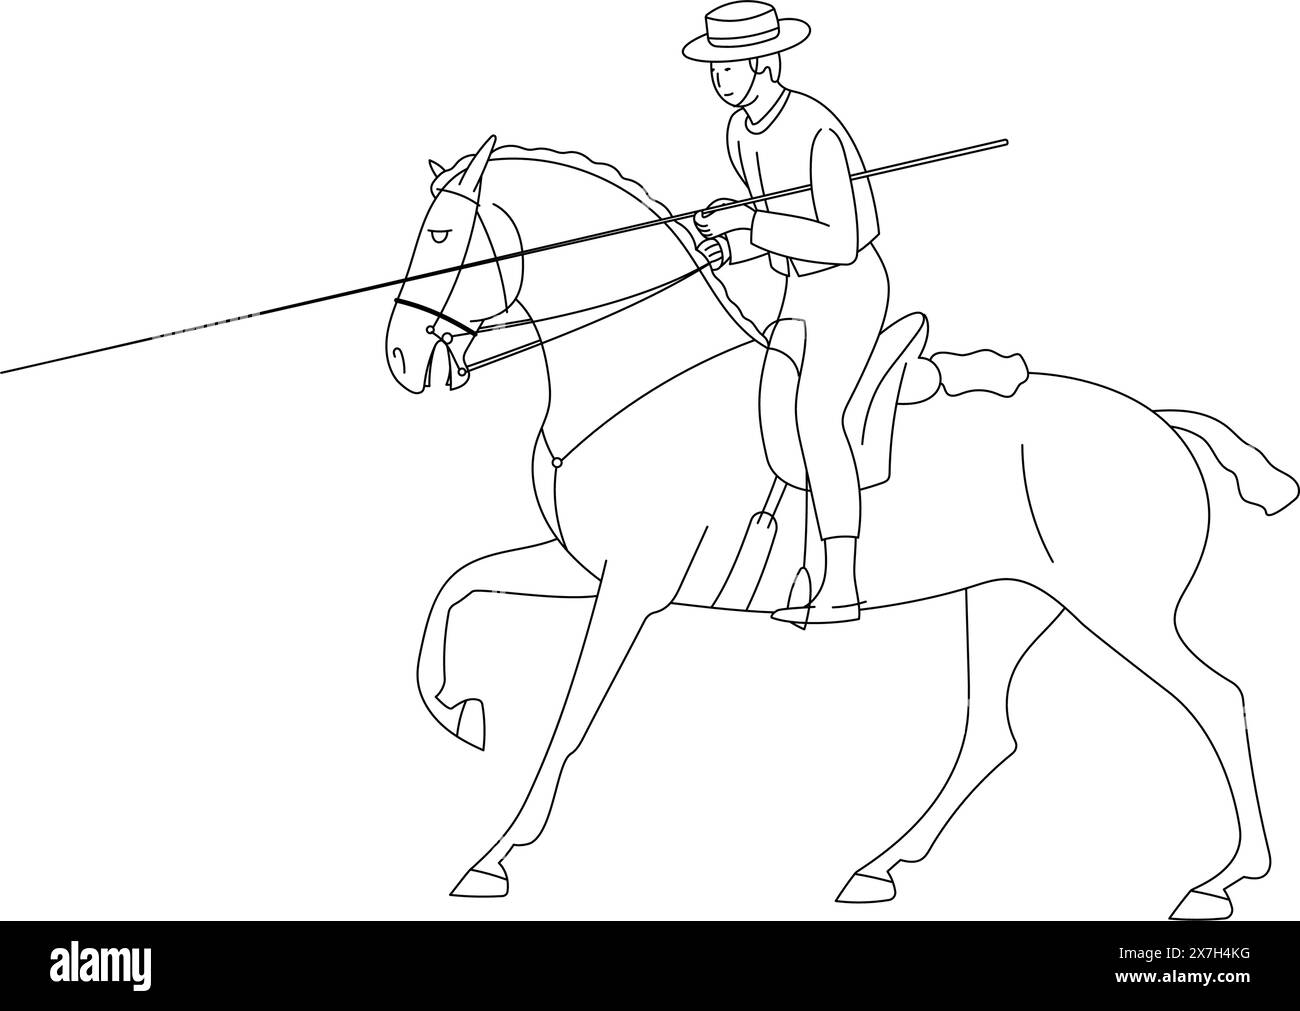 Reiter auf einem Pferd, mit einem Speer in der Hand, arbeitet mit dem Reitsport Stock Vektor